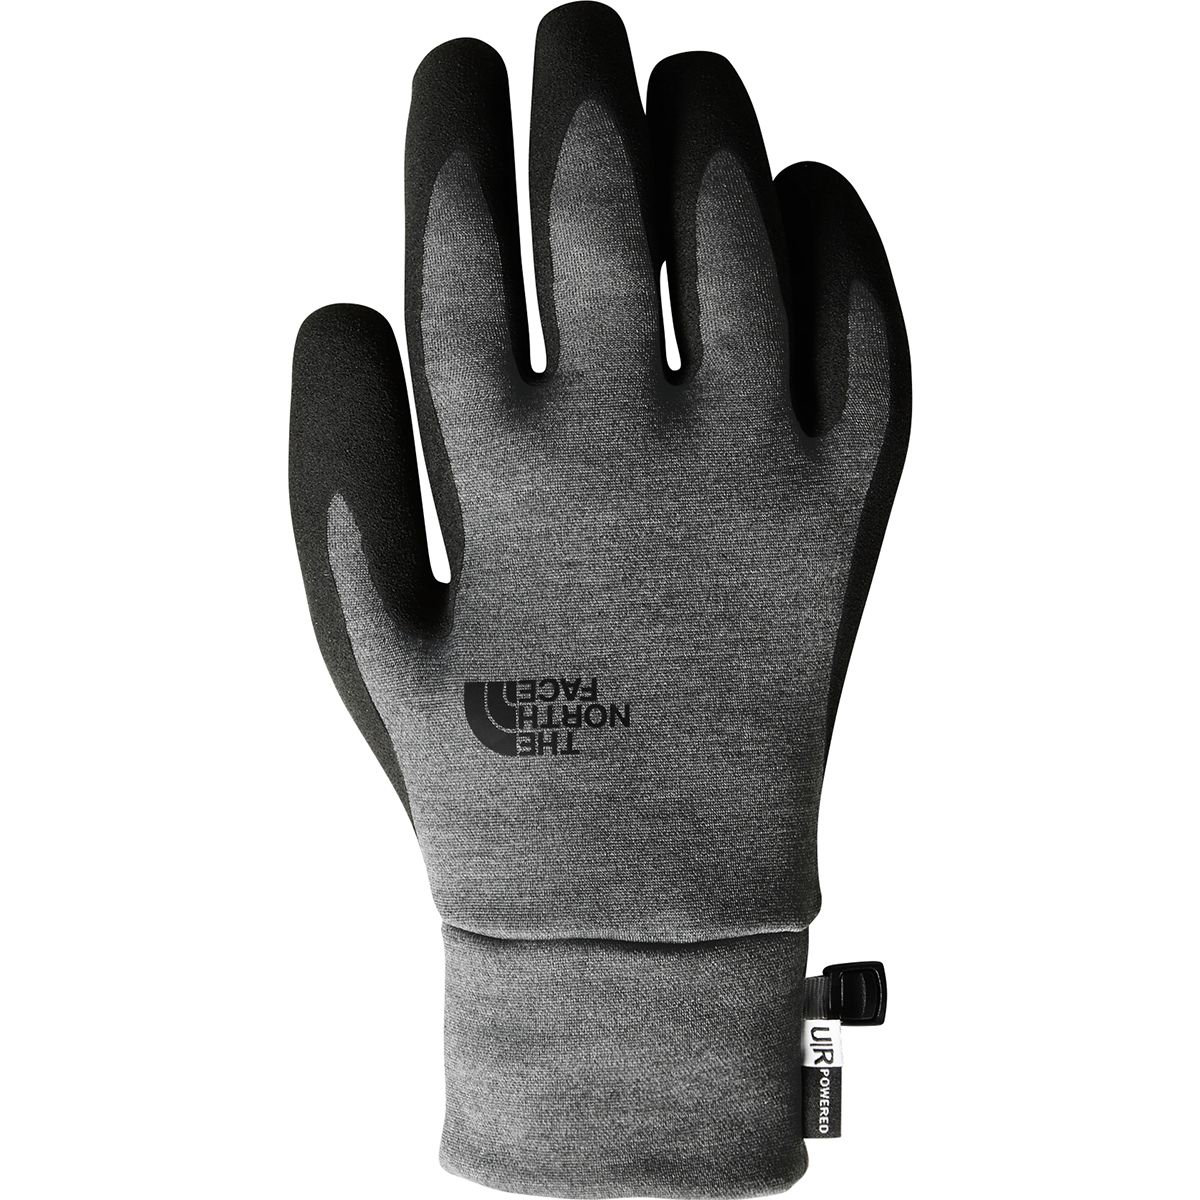 etip grip gloves